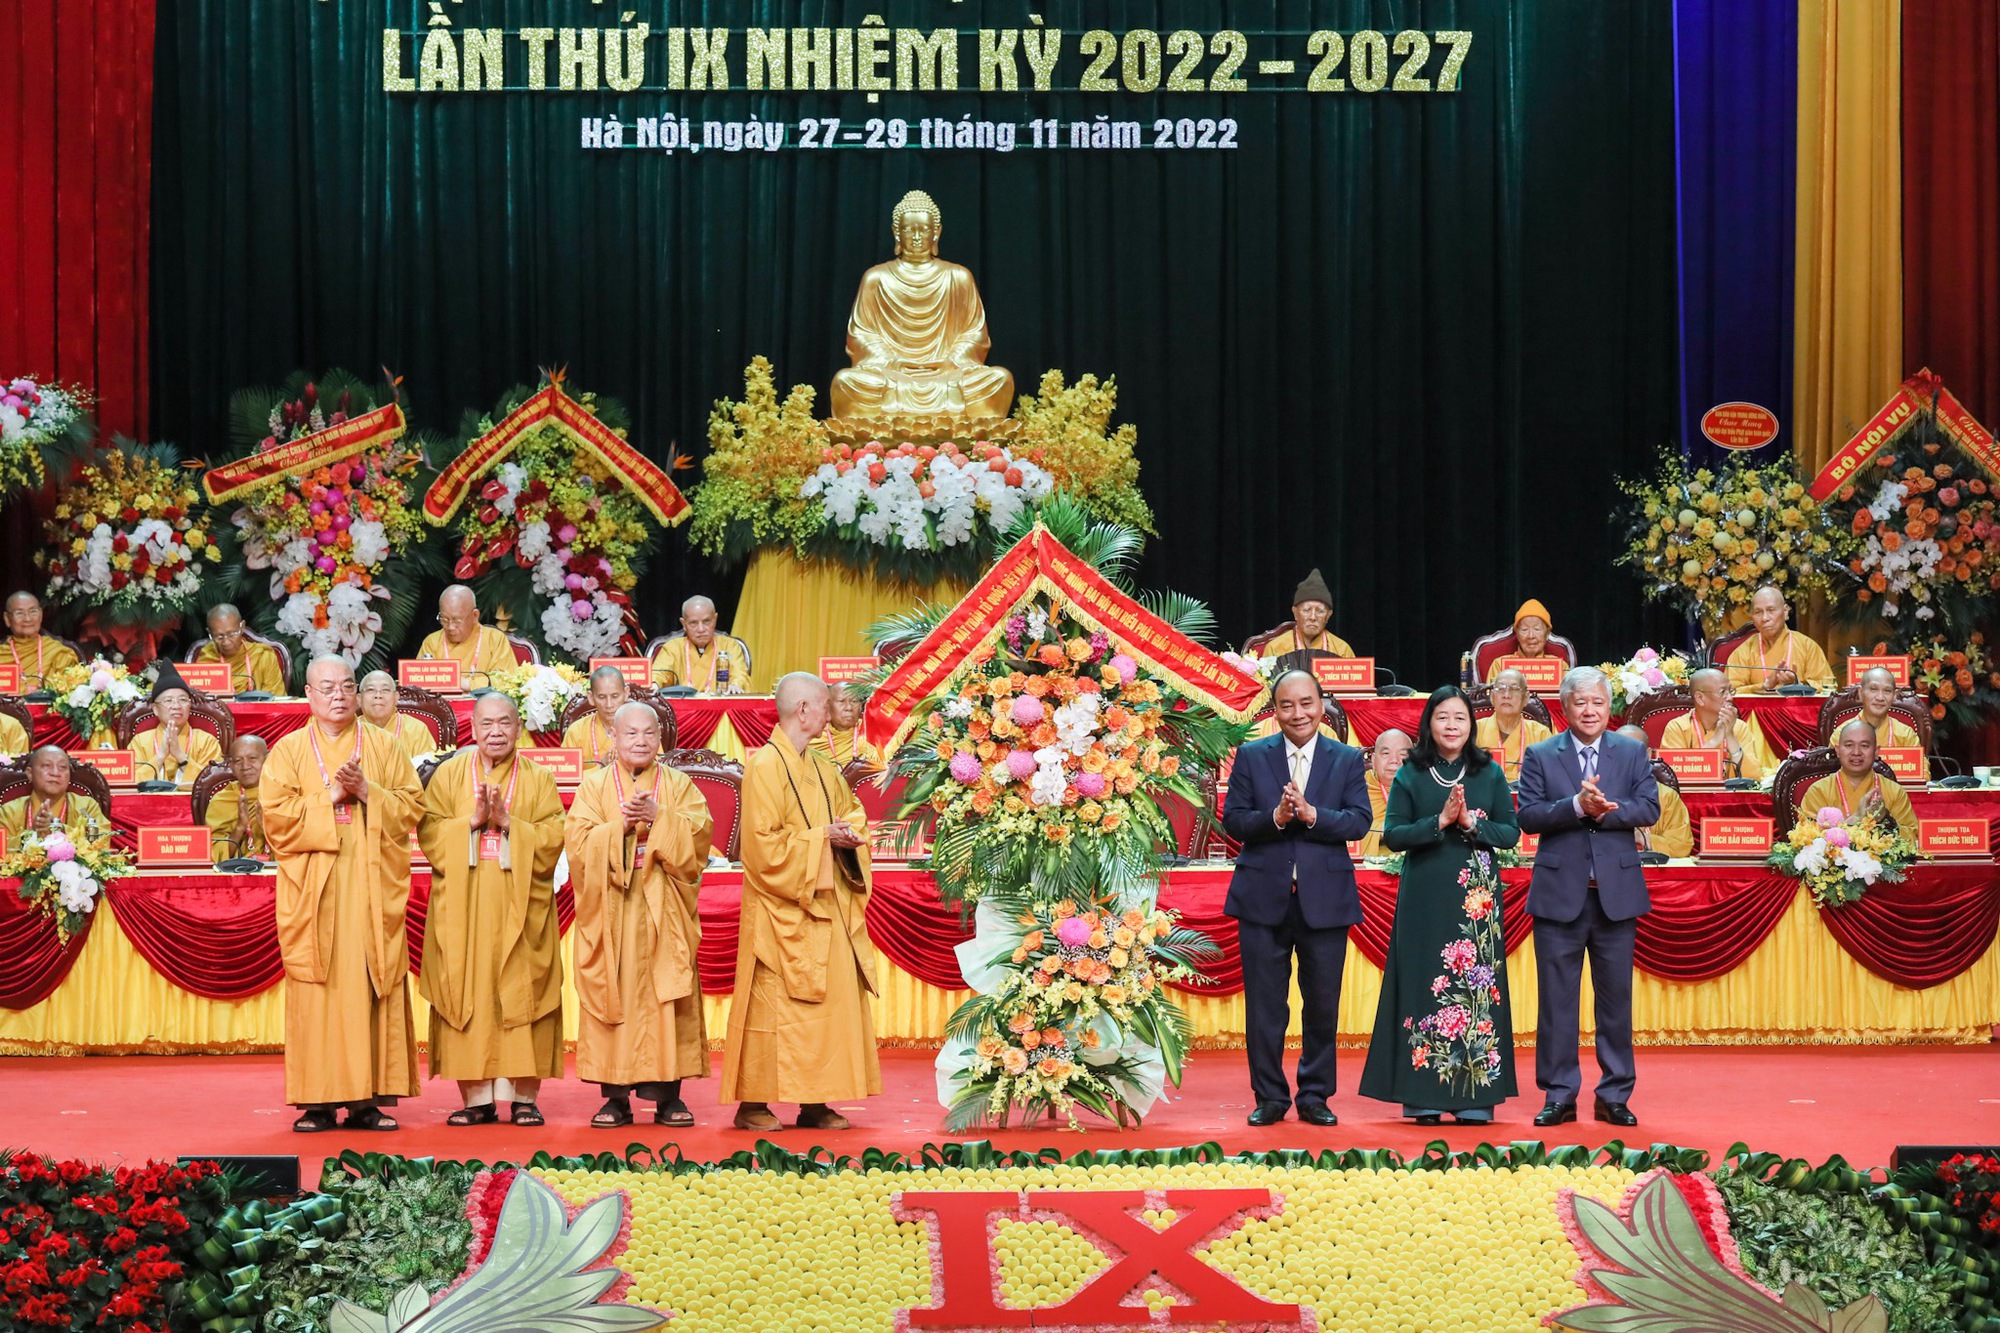 Đại hội Phật giáo toàn quốc sẽ tu chỉnh Hiến chương, bàn về tài sản riêng của Tăng, Ni - Ảnh 7.